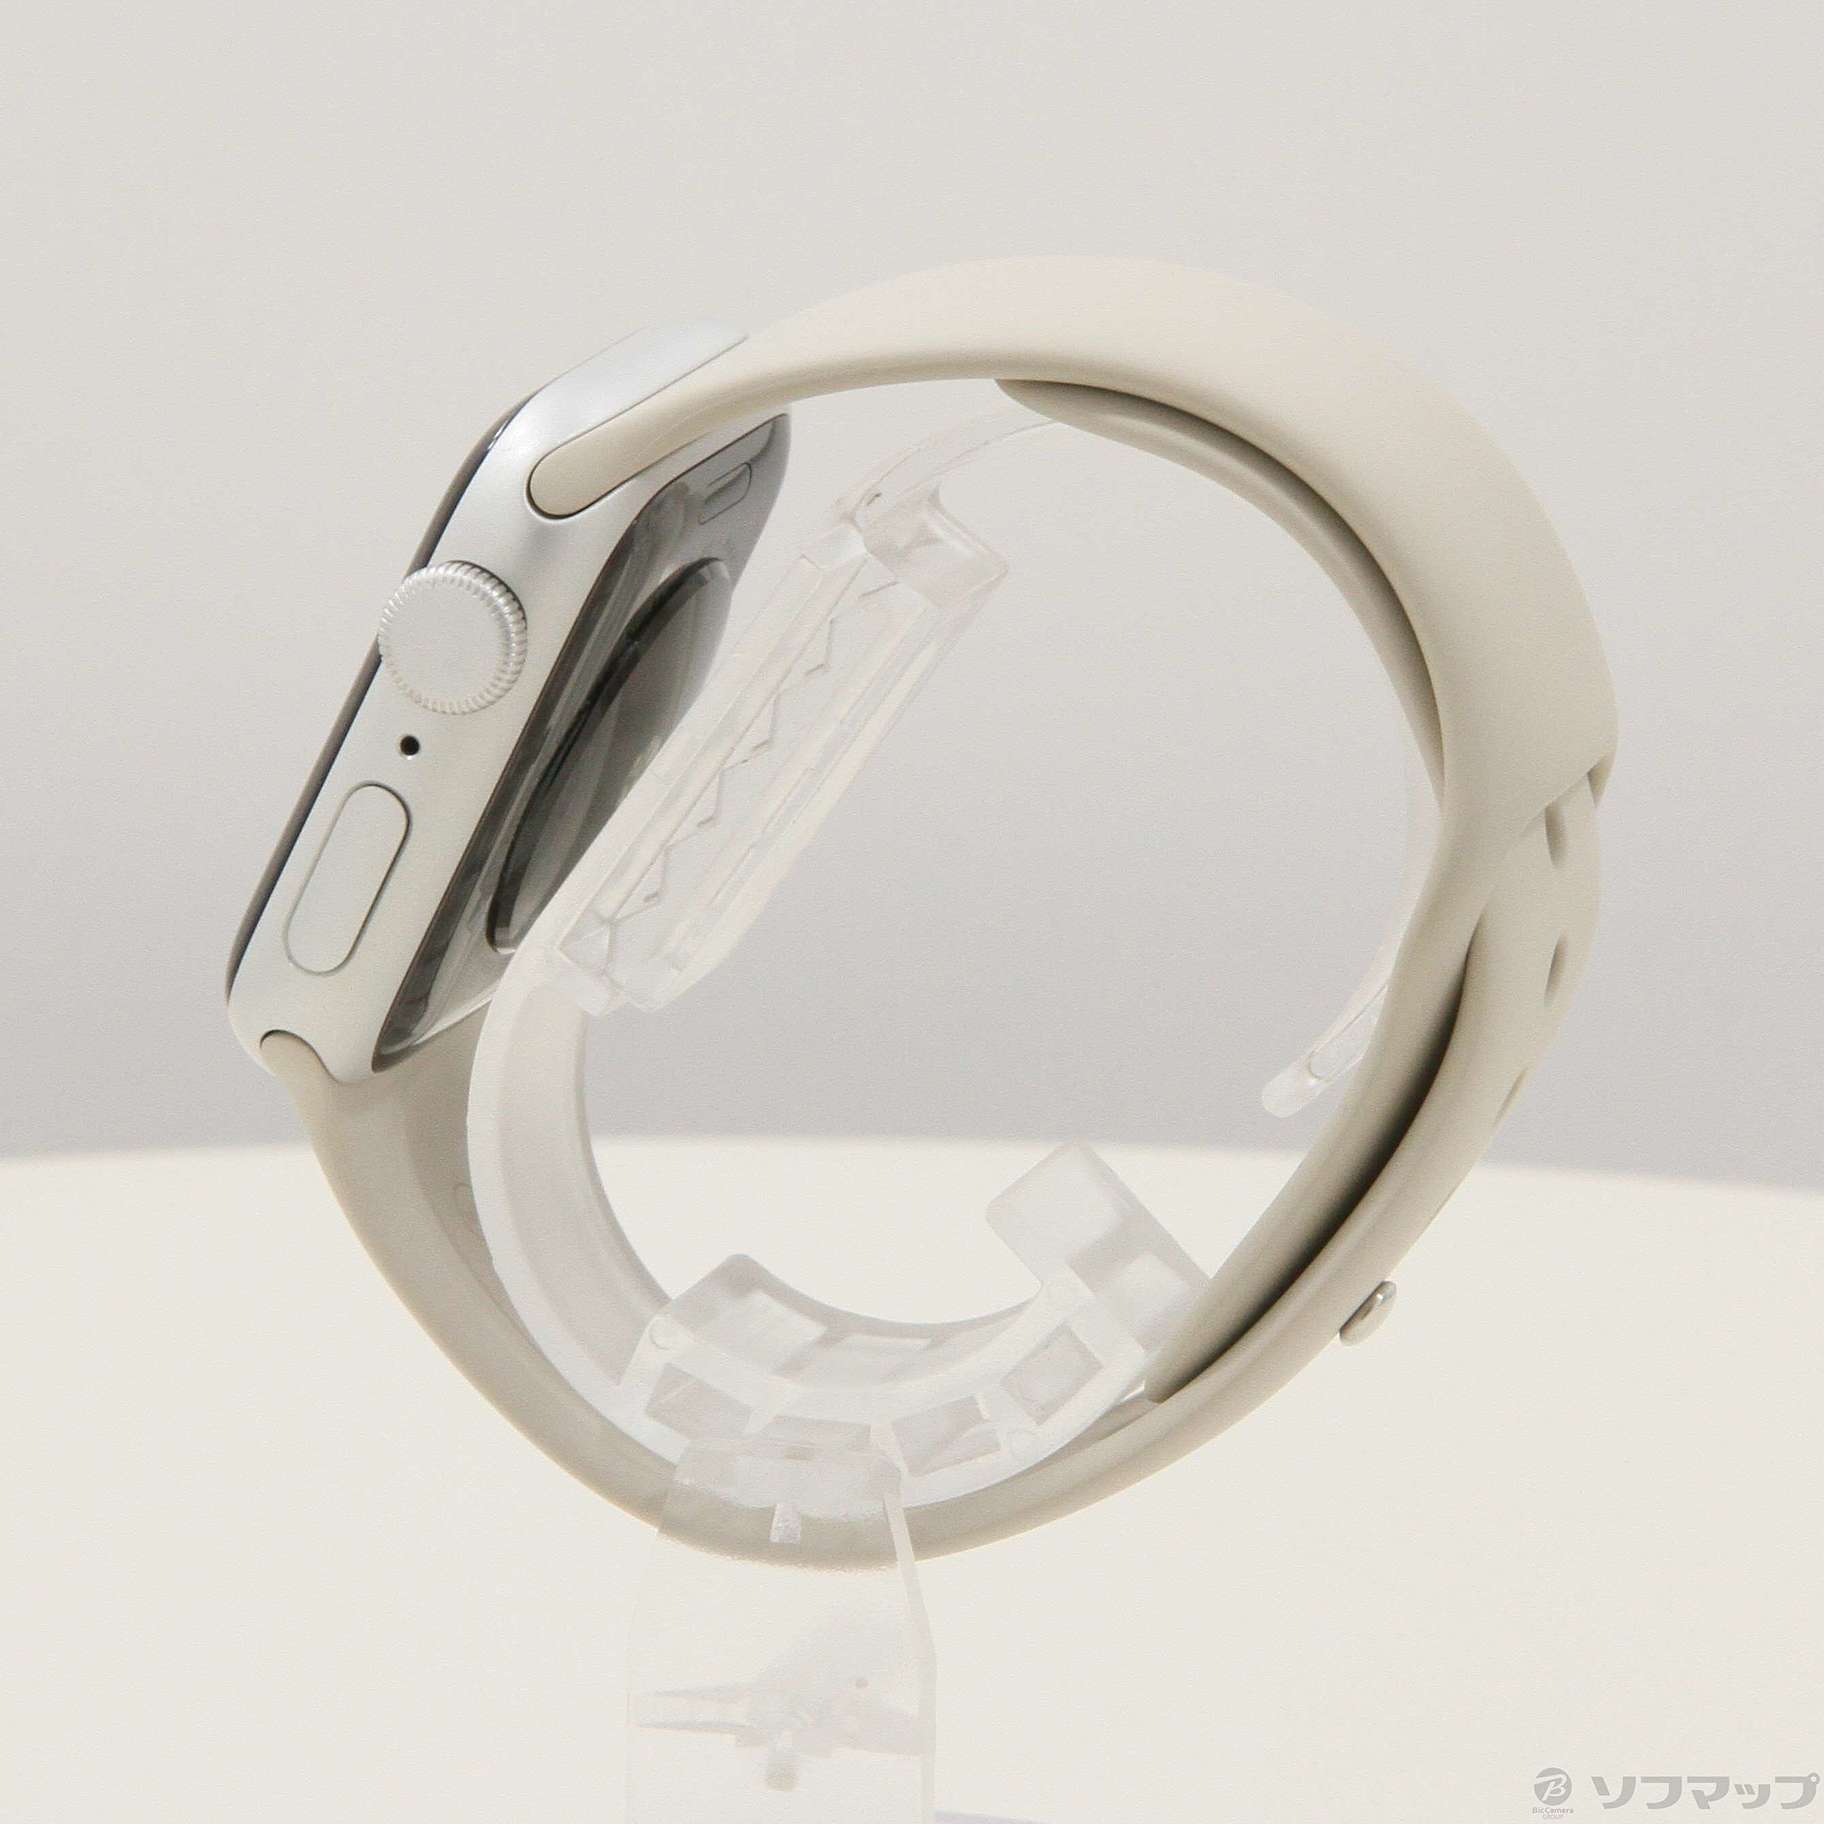 Apple Watch SE 第1世代 GPS 40mm シルバーアルミニウムケース スターライトスポーツバンド